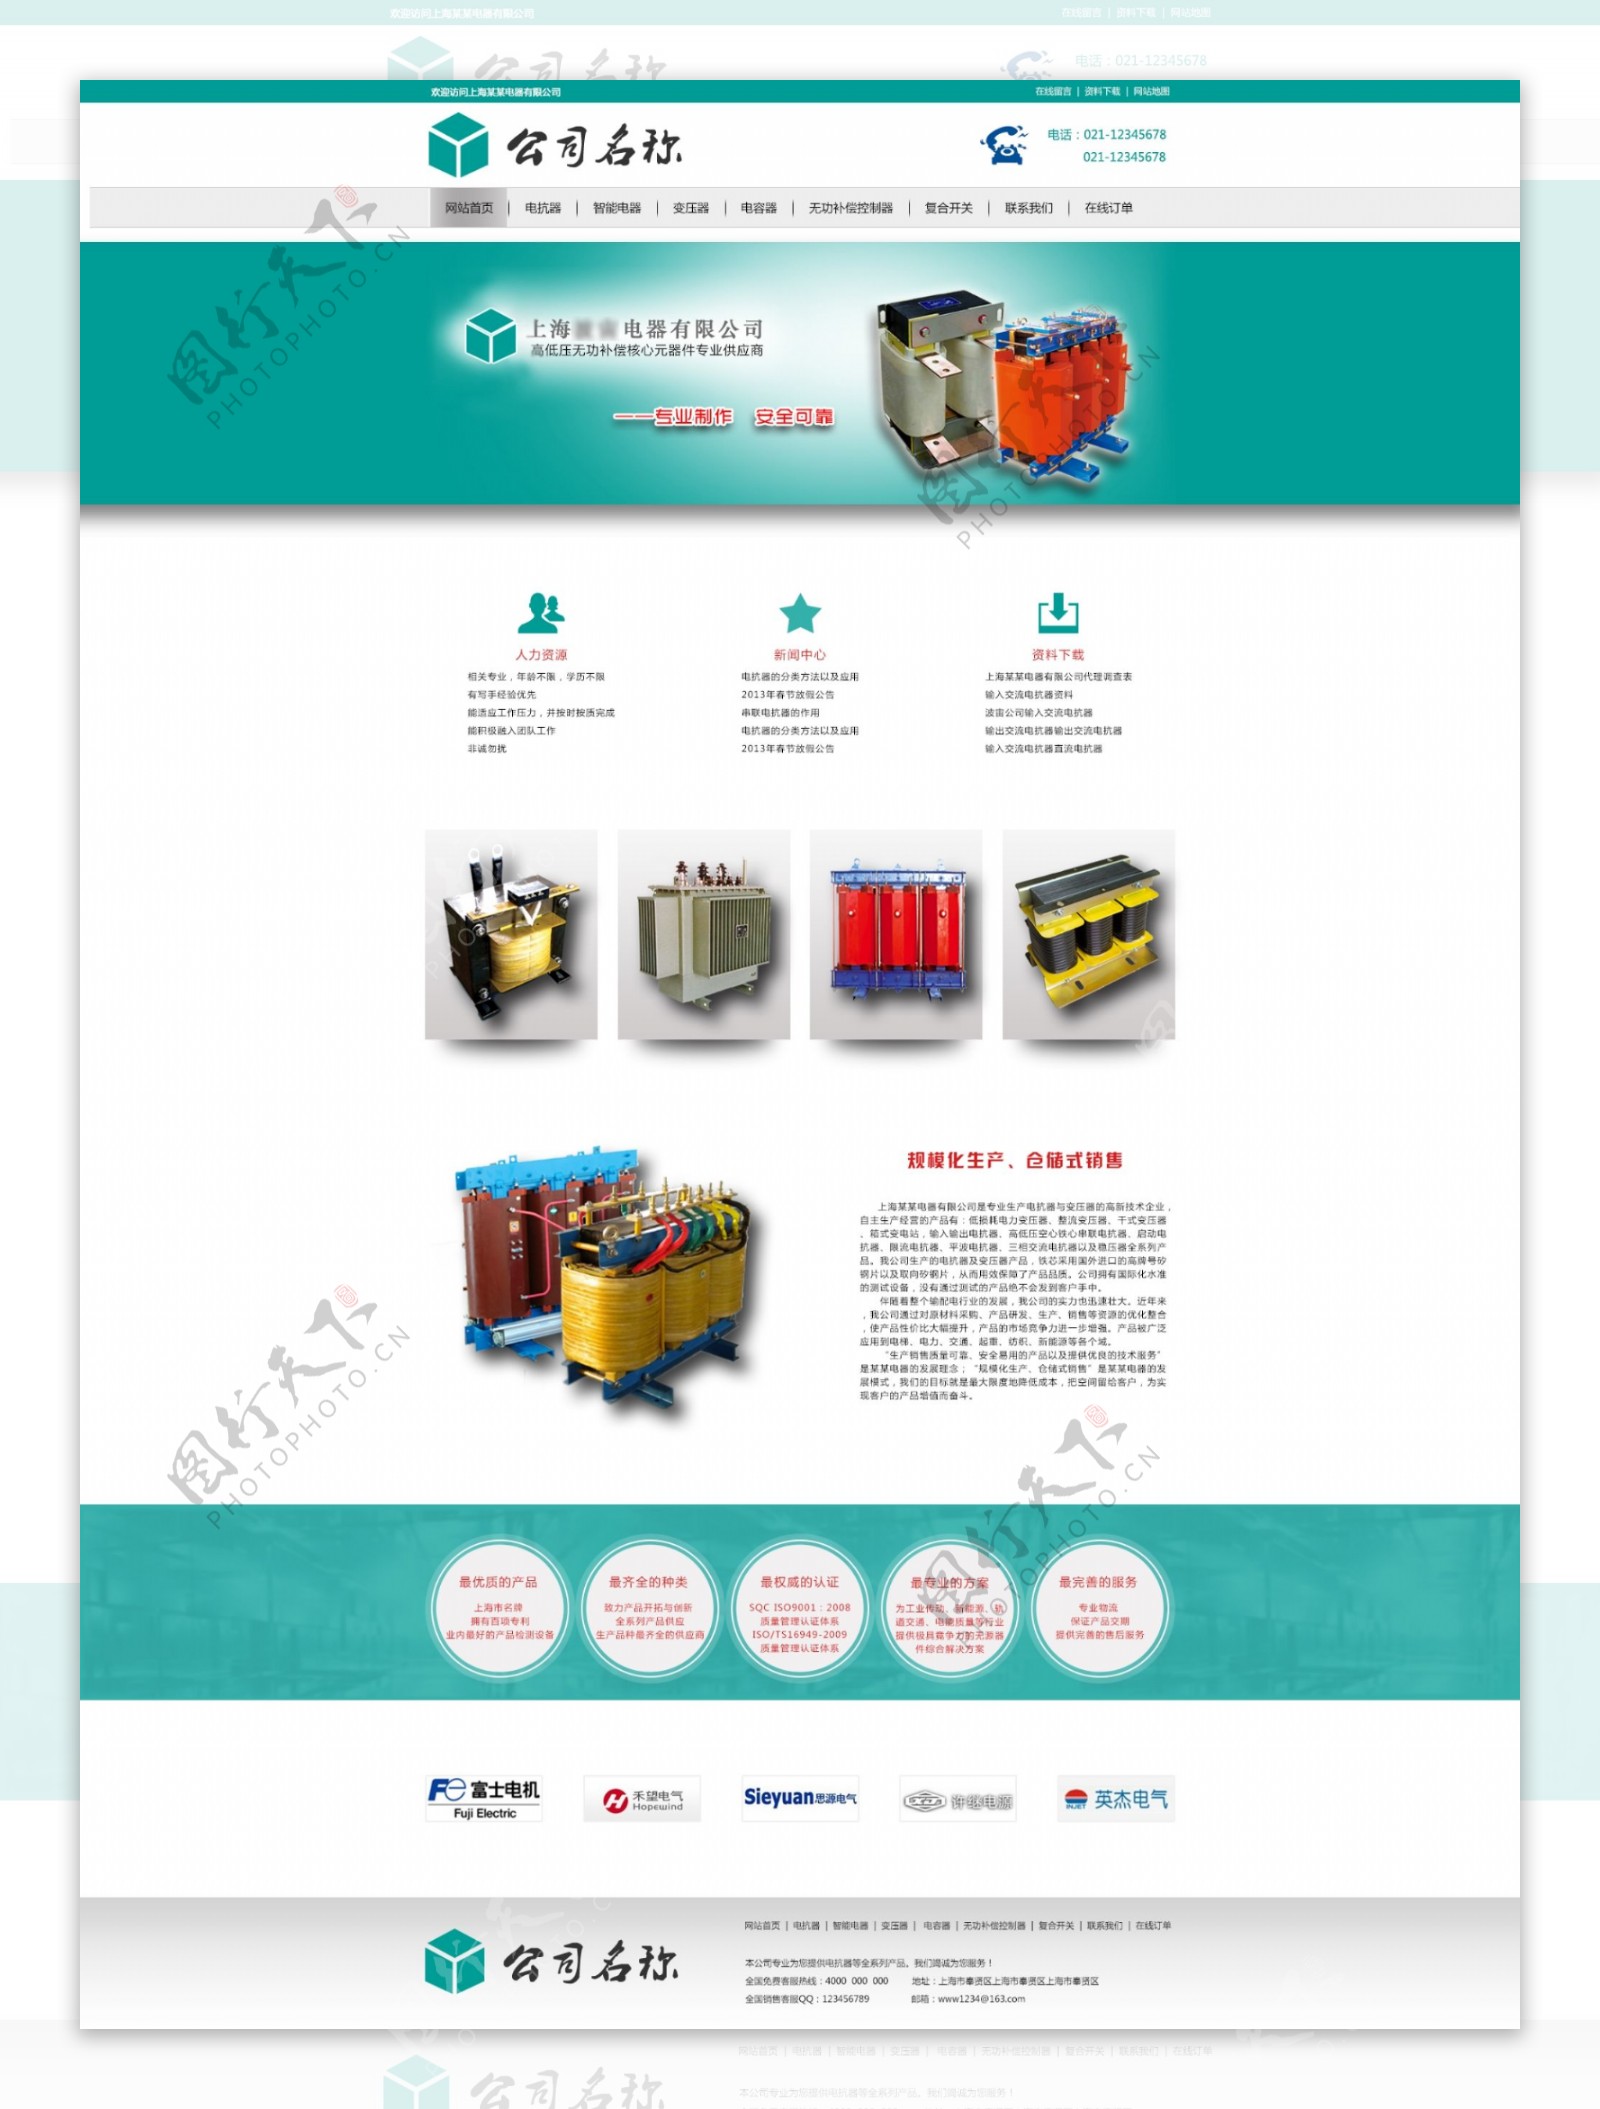 电器公司web界面设计图片